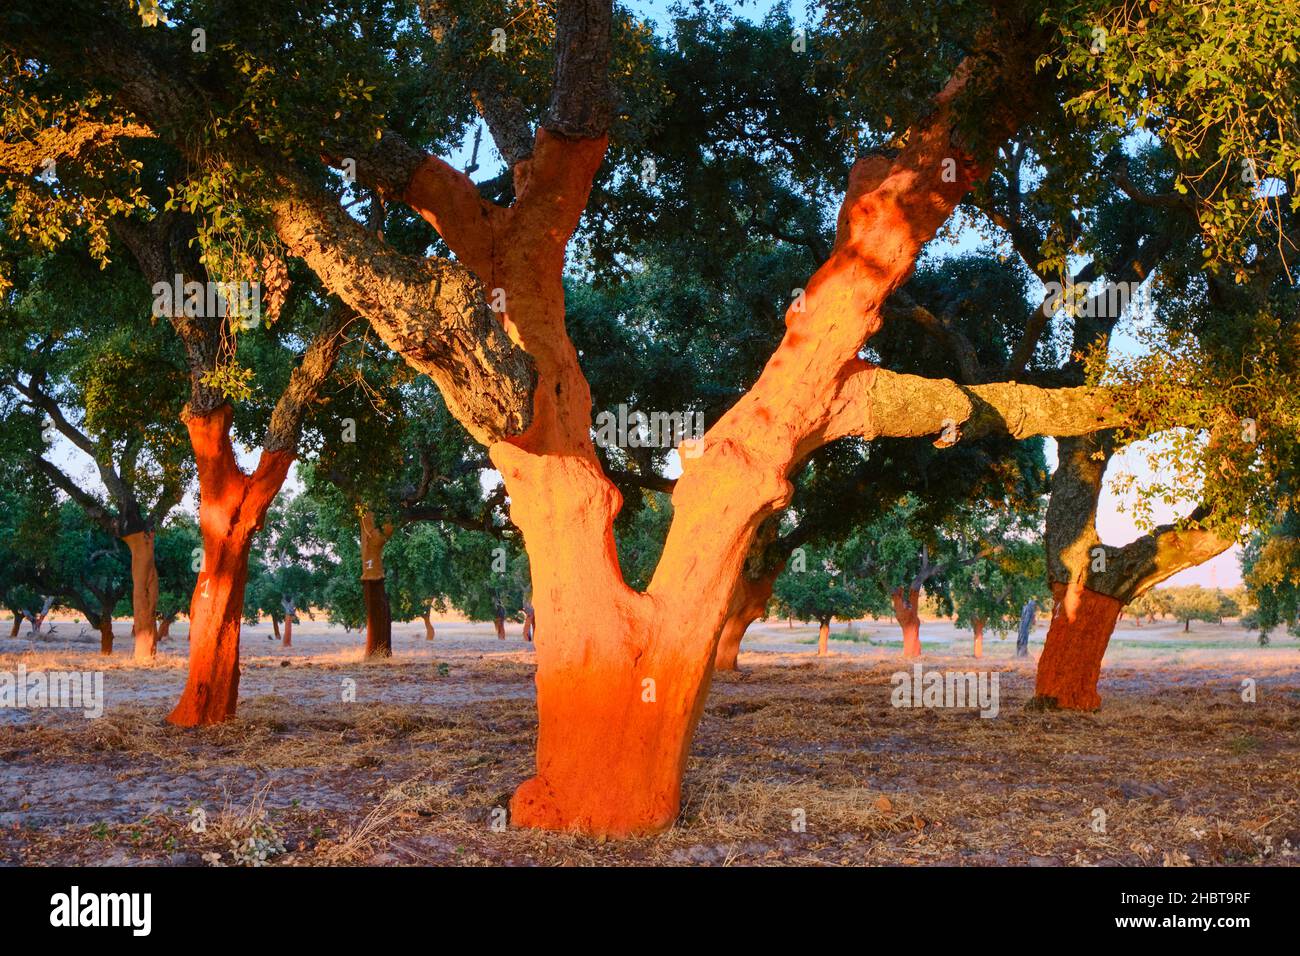 Un arbre de liège avec le liège récemment coupé.Le Portugal est le leader mondial de la production de liège.Palmela, Portugal Banque D'Images